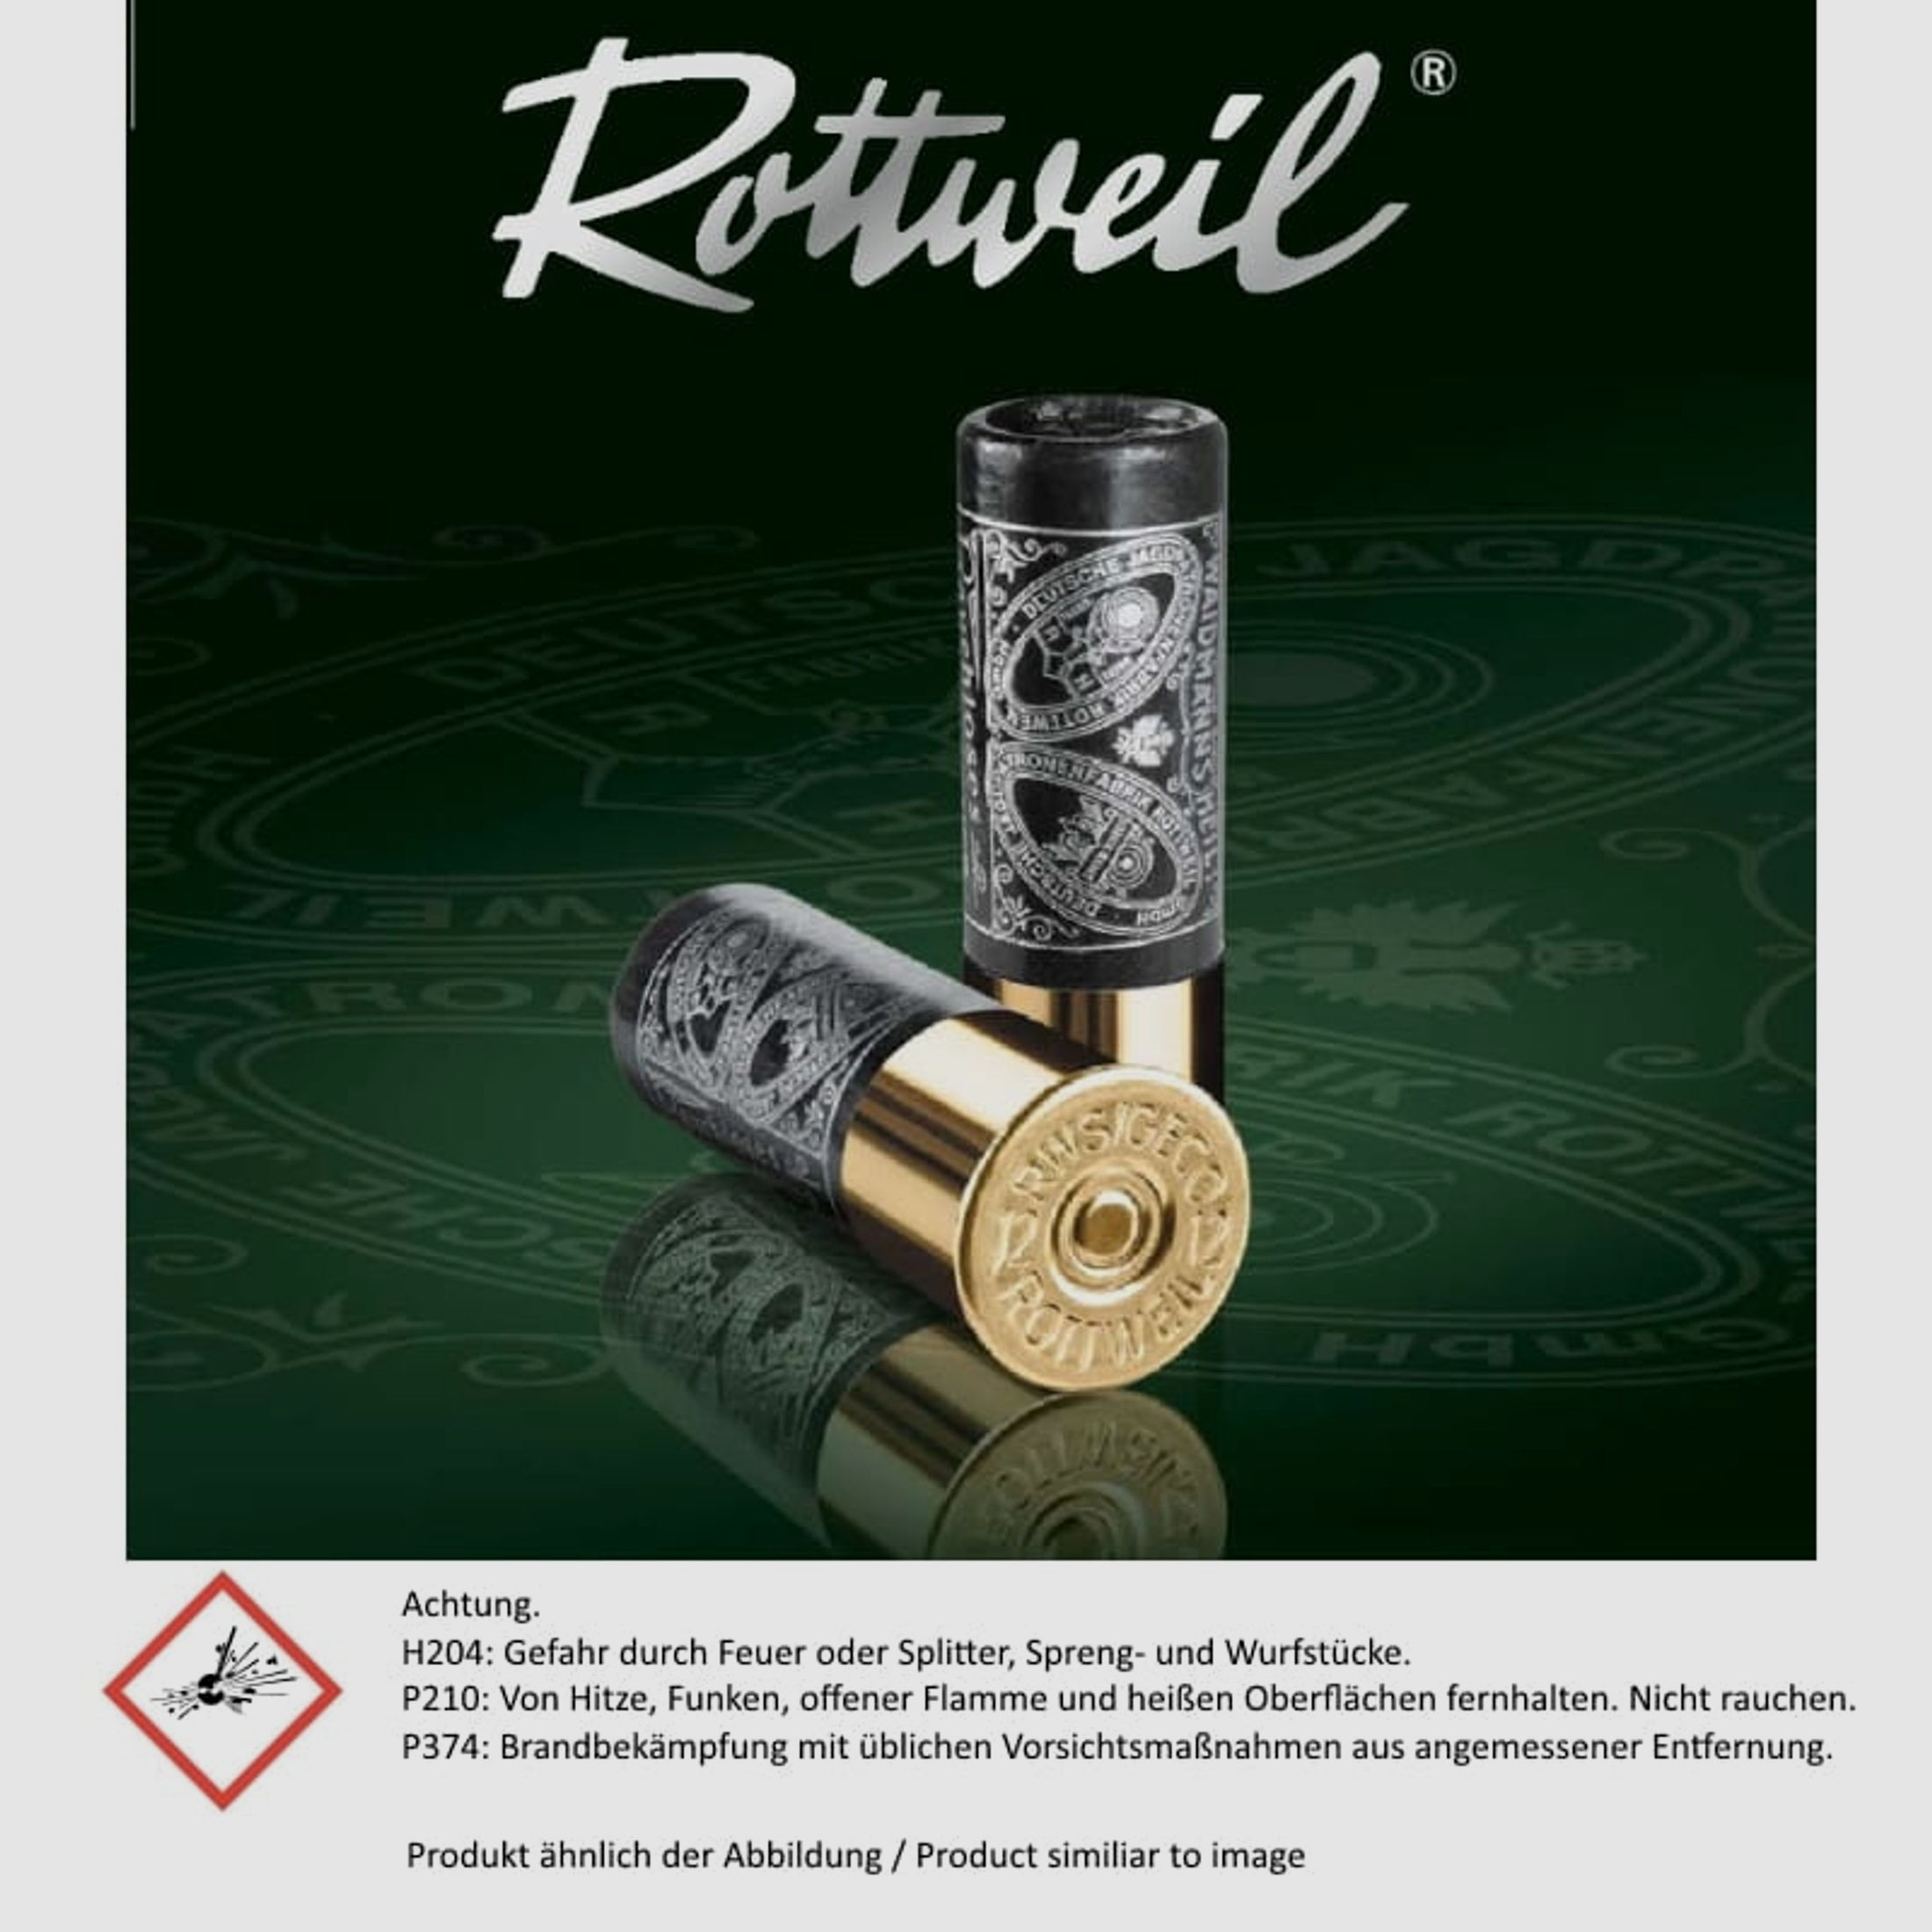 ROTTWEIL Flintenlaufgeschosse 12/70 Brenneke Classic Magnum  5 Stk